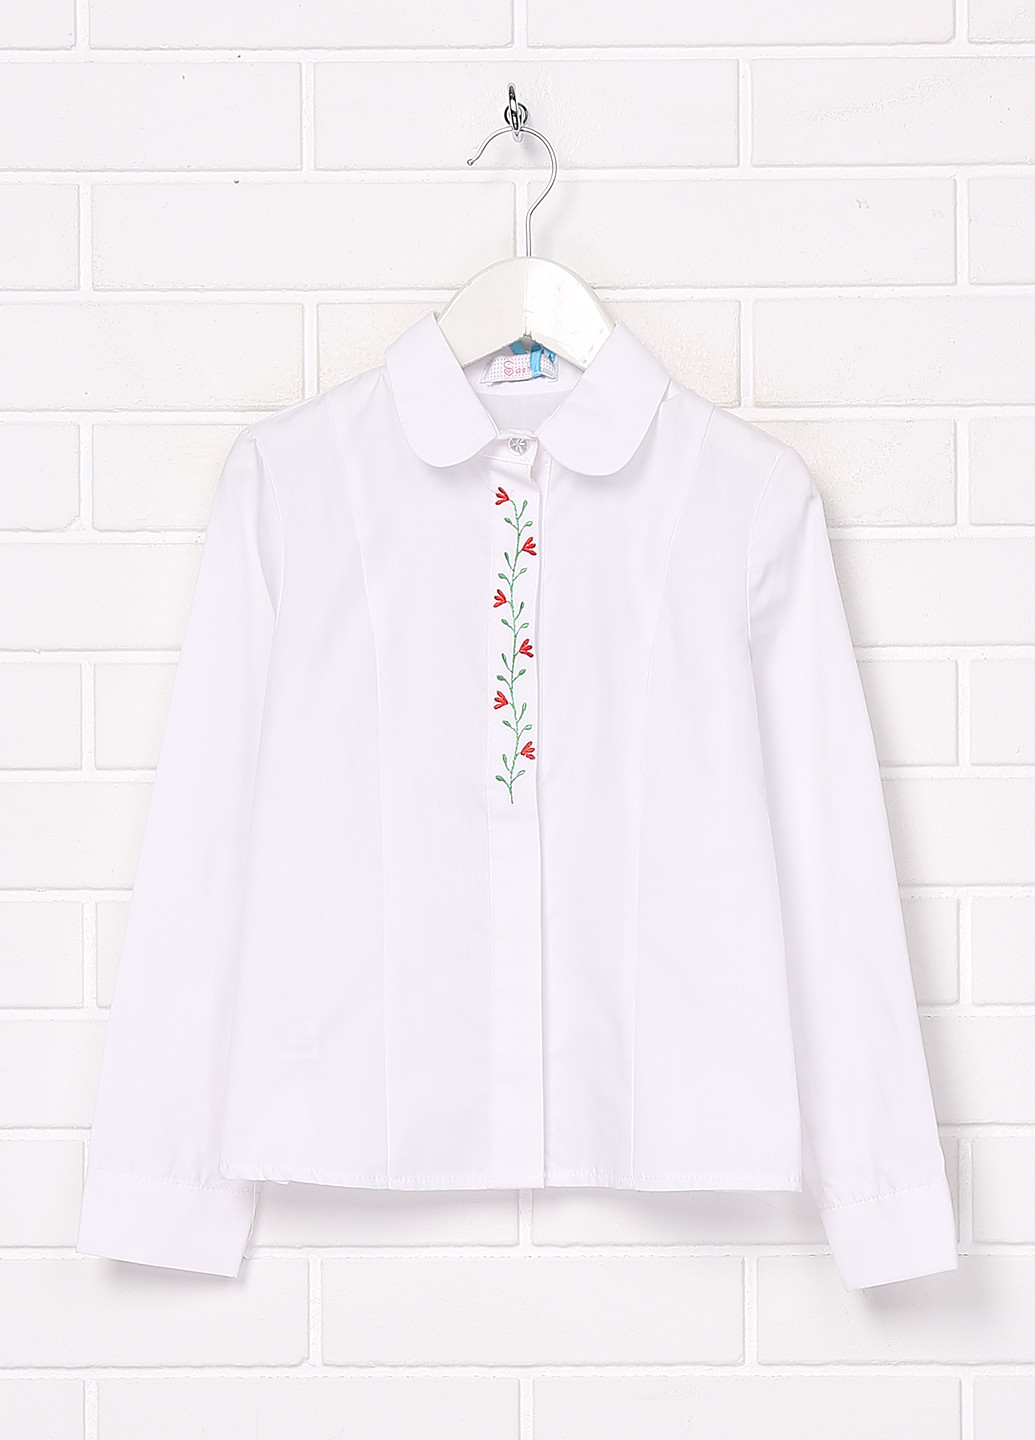 Белая цветочной расцветки блузка Sasha демисезонная